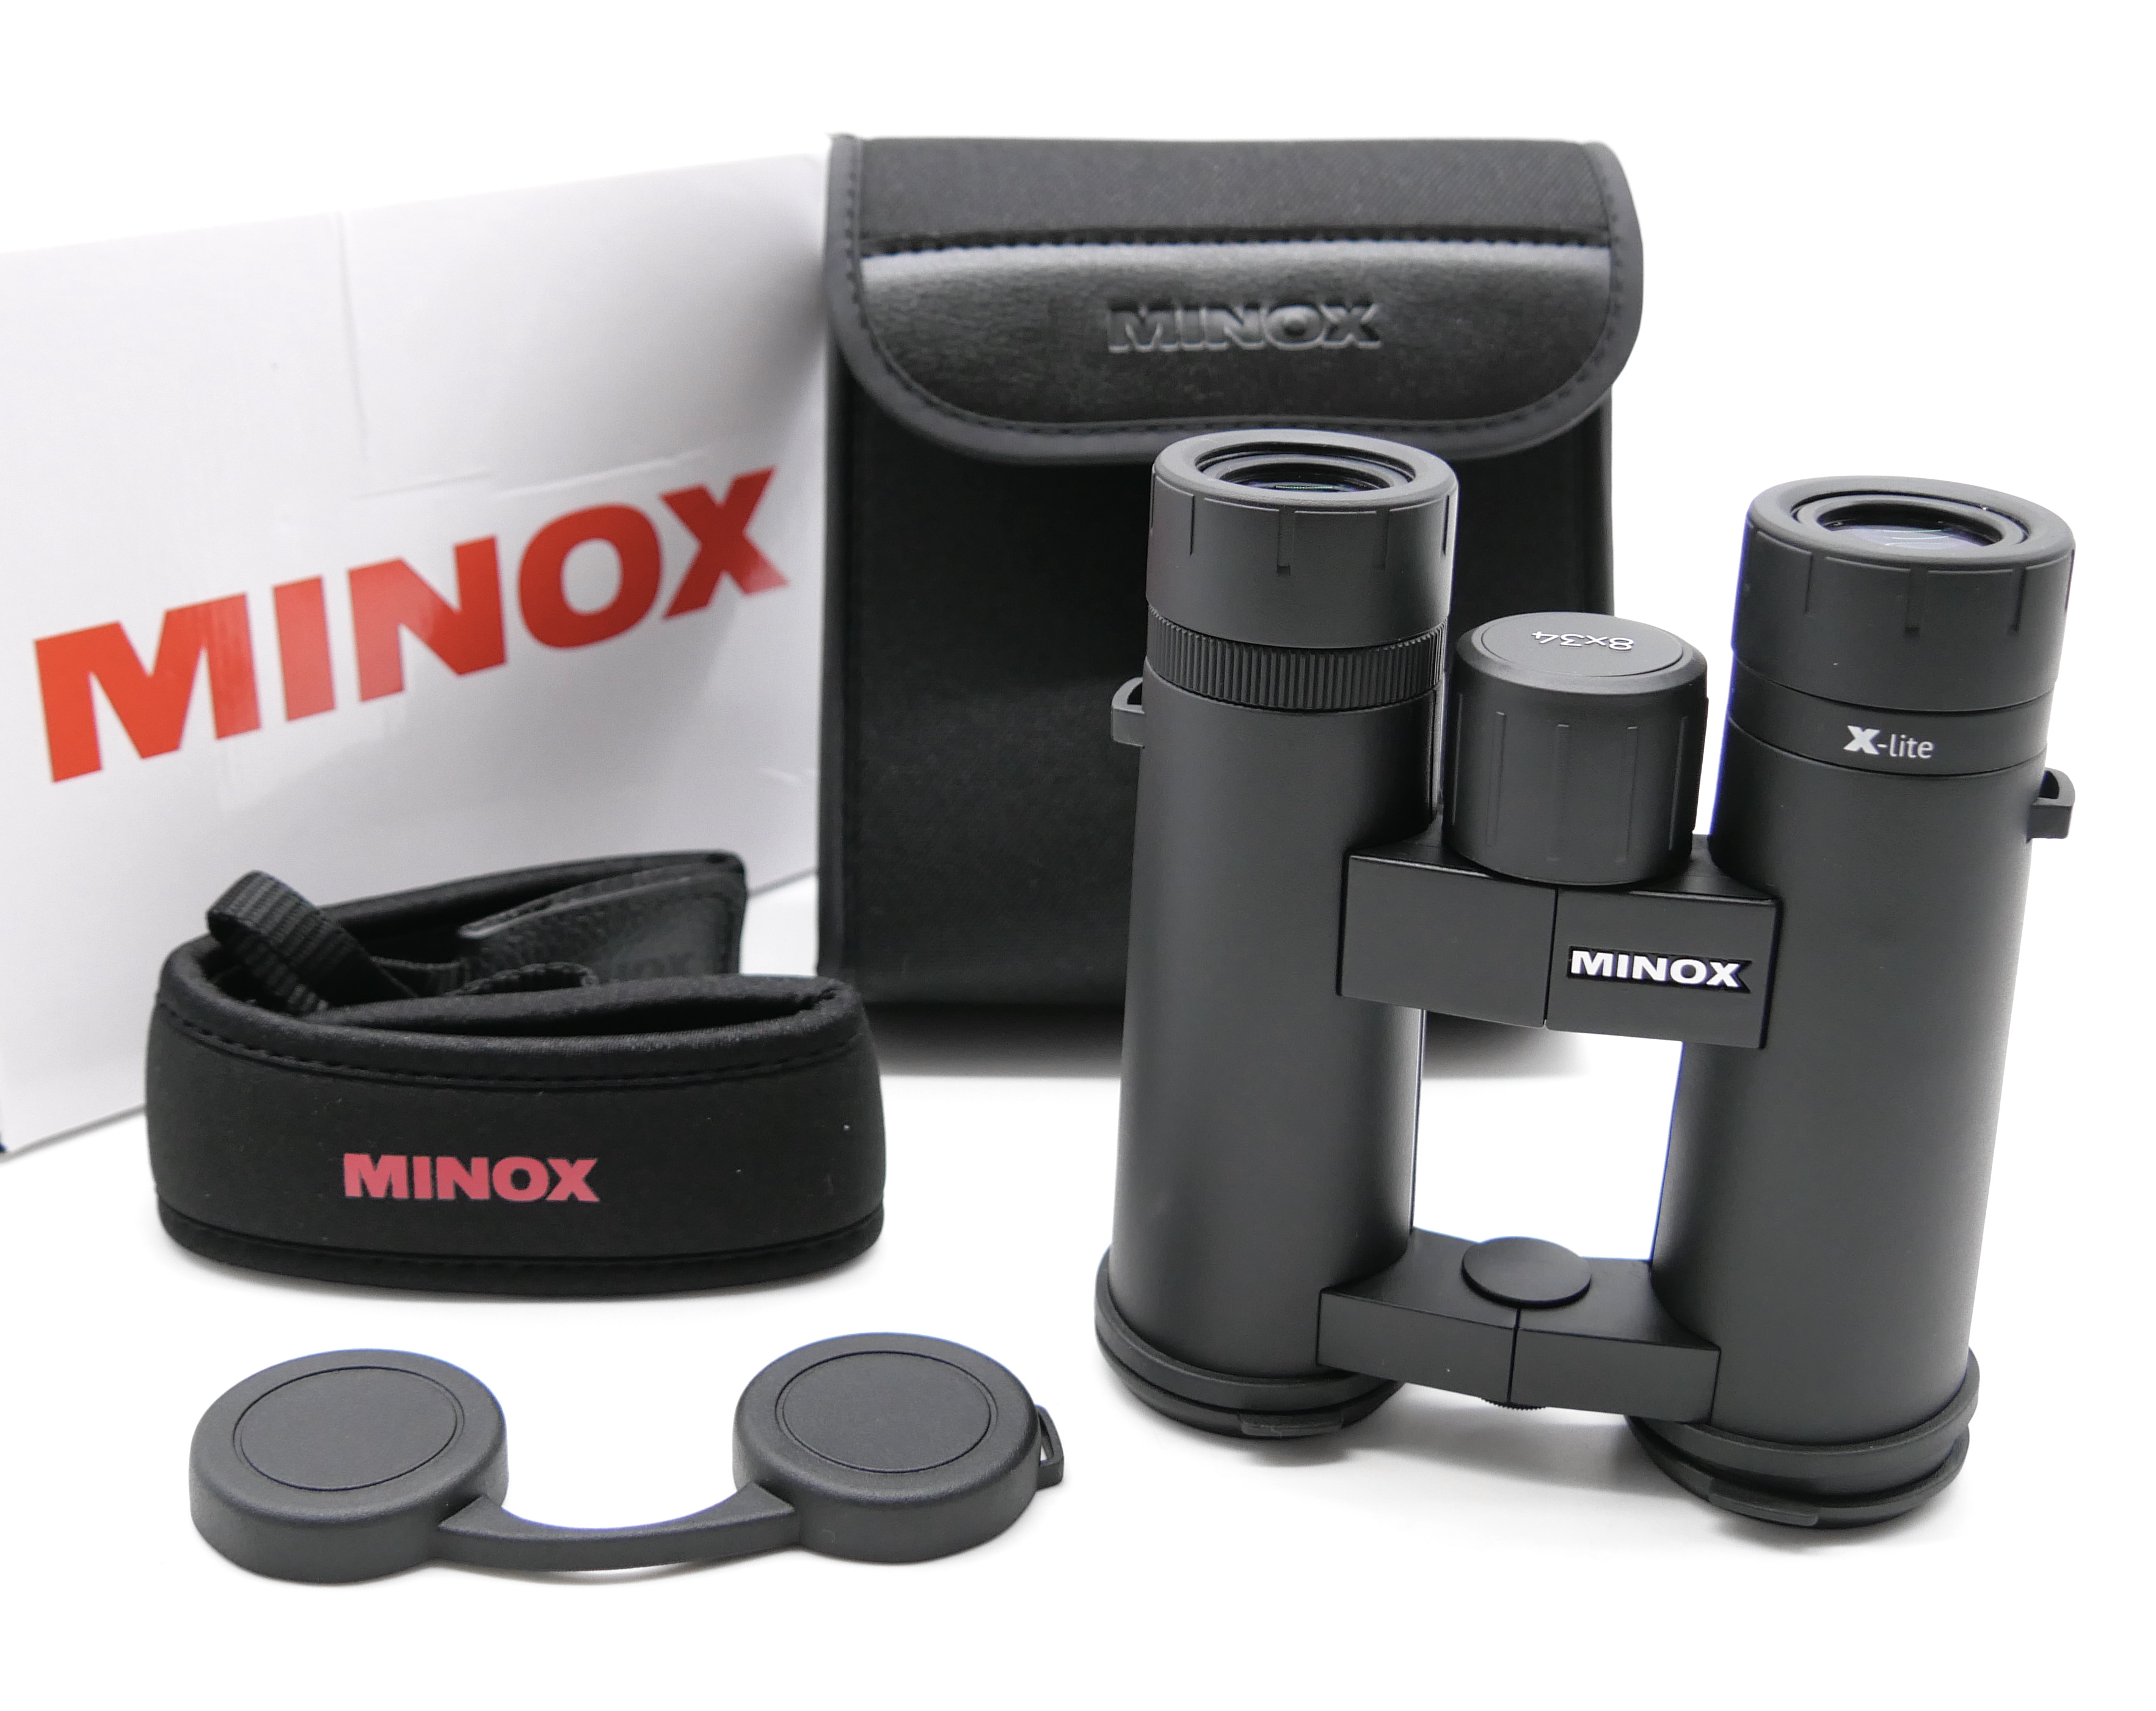 Minox 80407327 Fernglas XLite 8x42 Neuheit für Pirschjagd und Outdooraktivität 